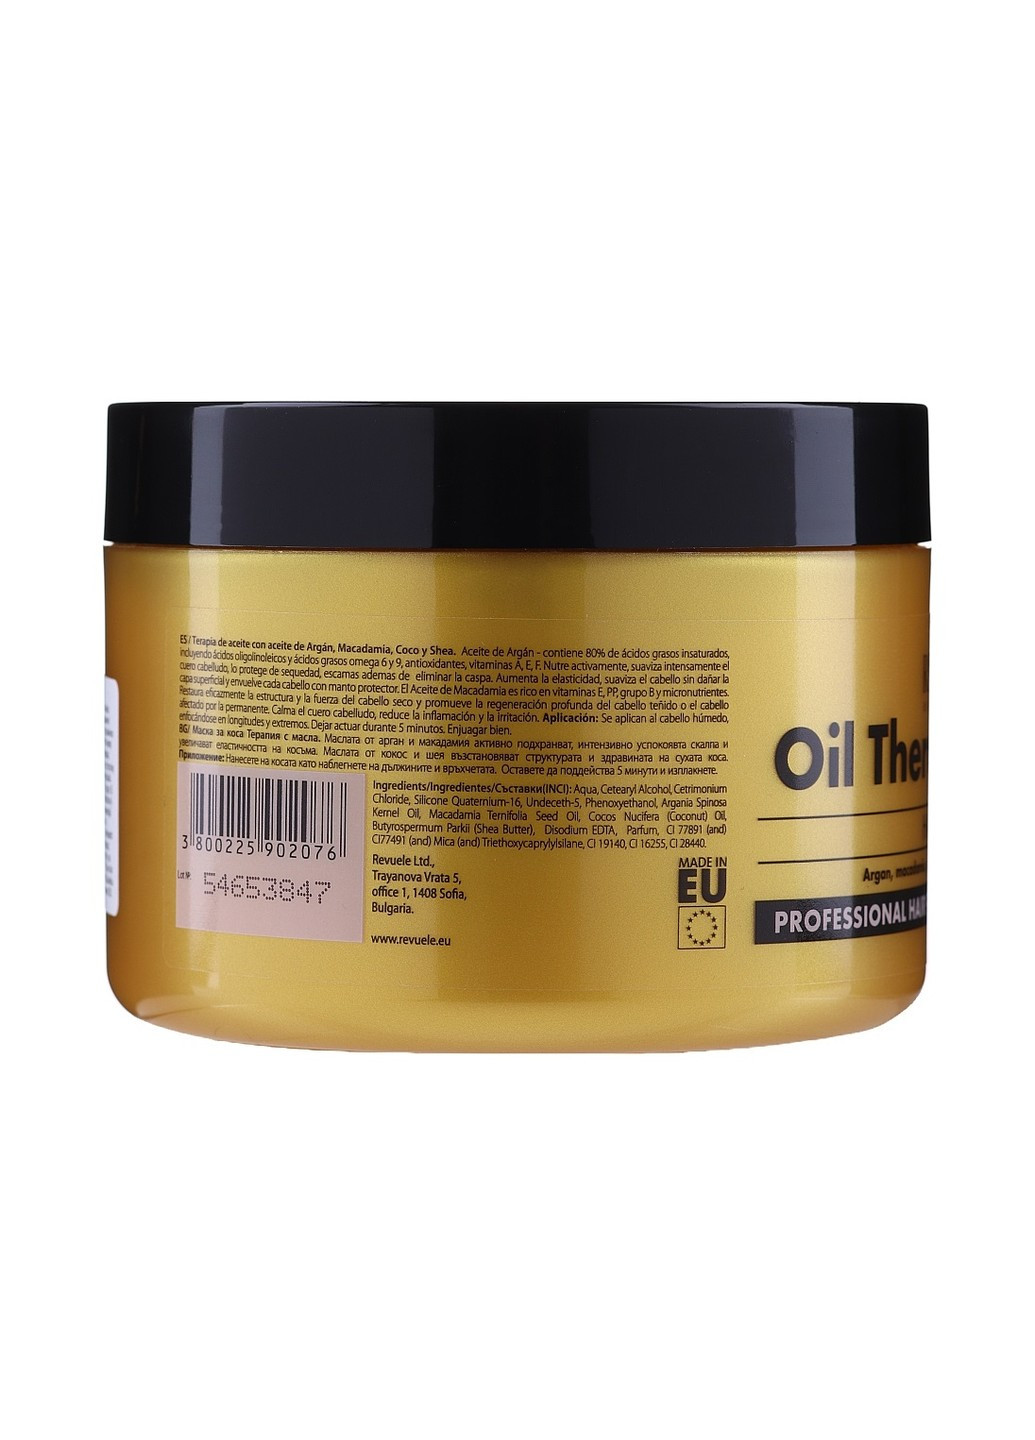 Маска для волосся Оліятерапія з аргановою олією, макадамією, кокосовою олією та ши 500 мл REVUELE (256164575)